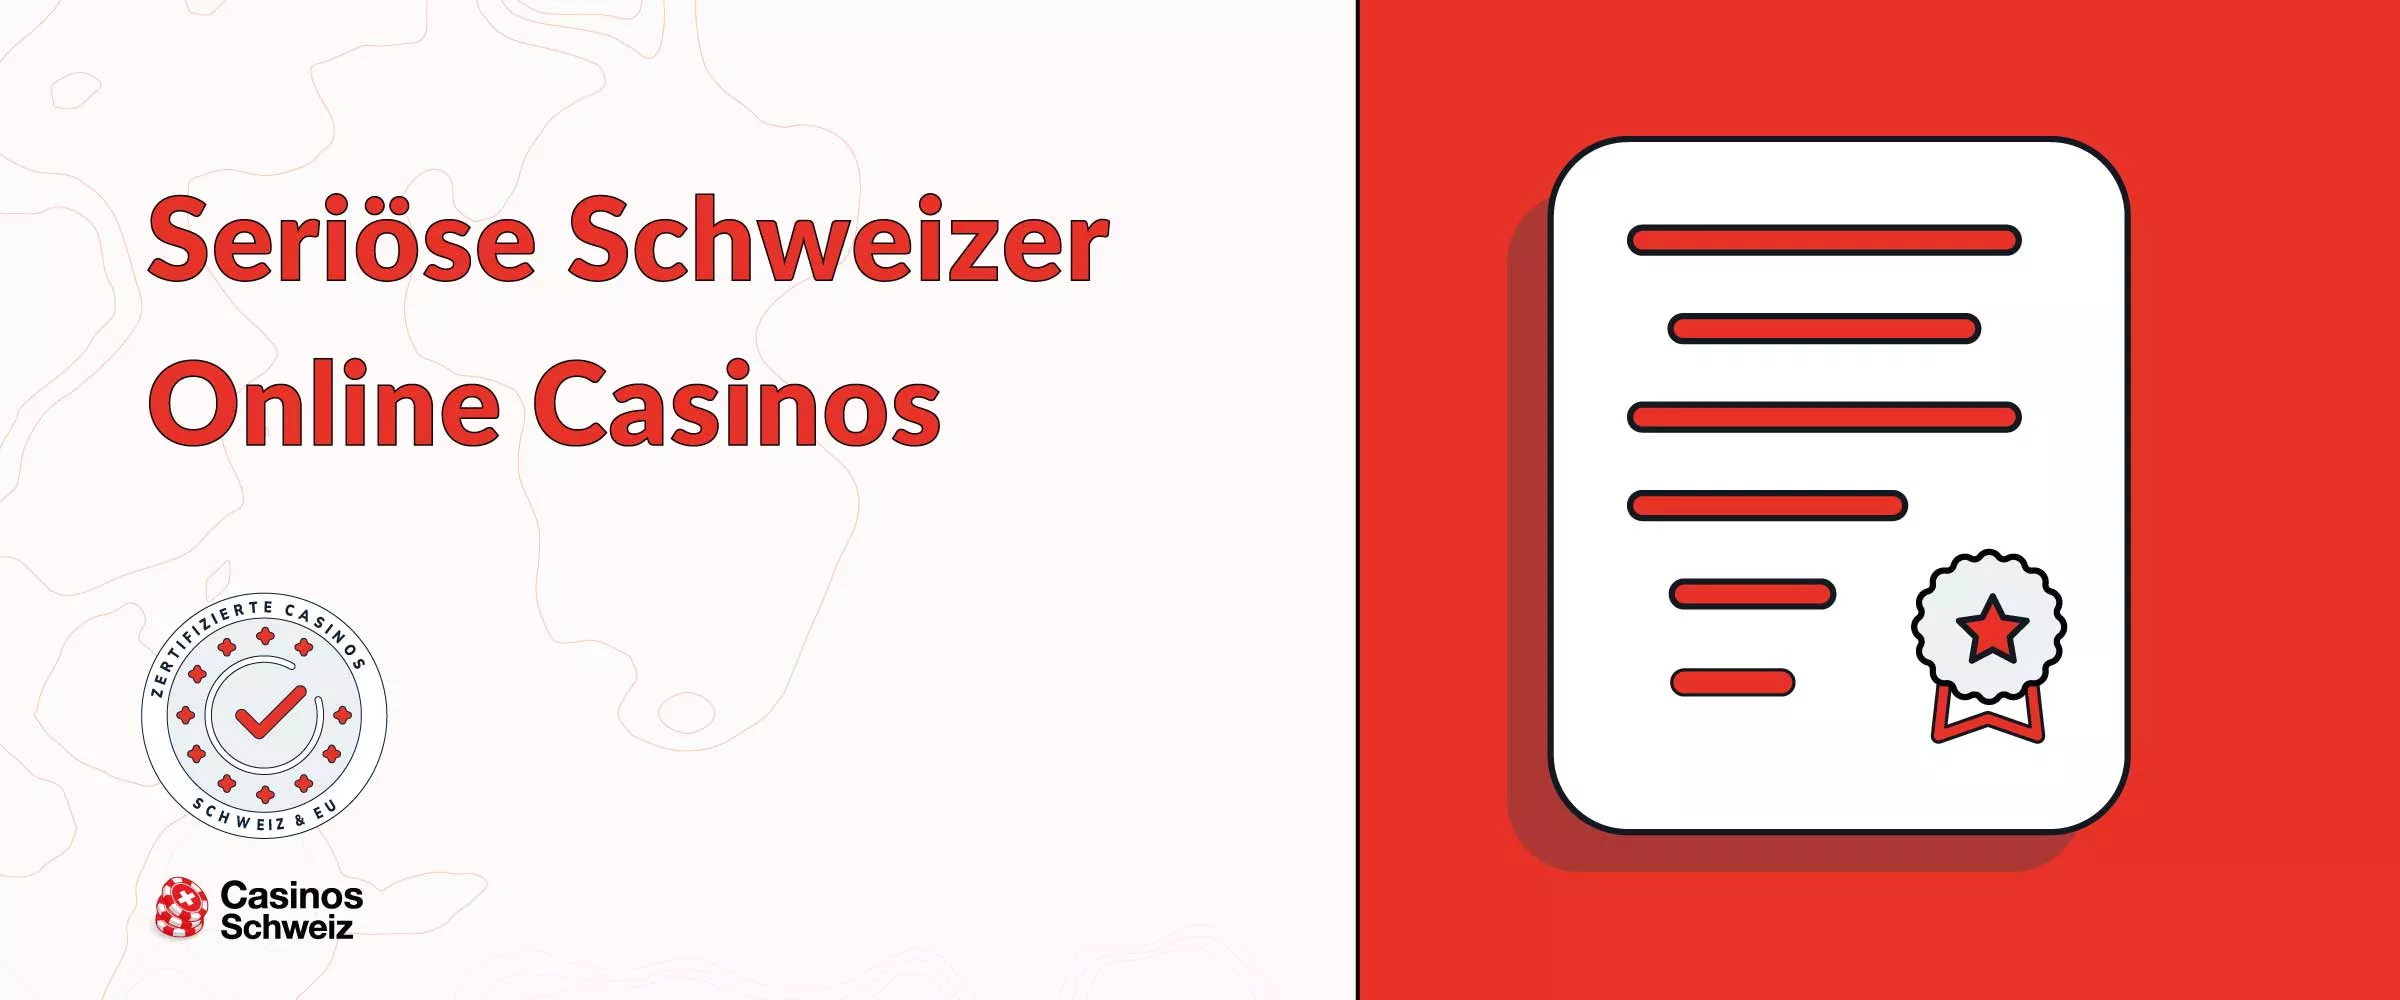 Seriöse Schweizer Online Casinos